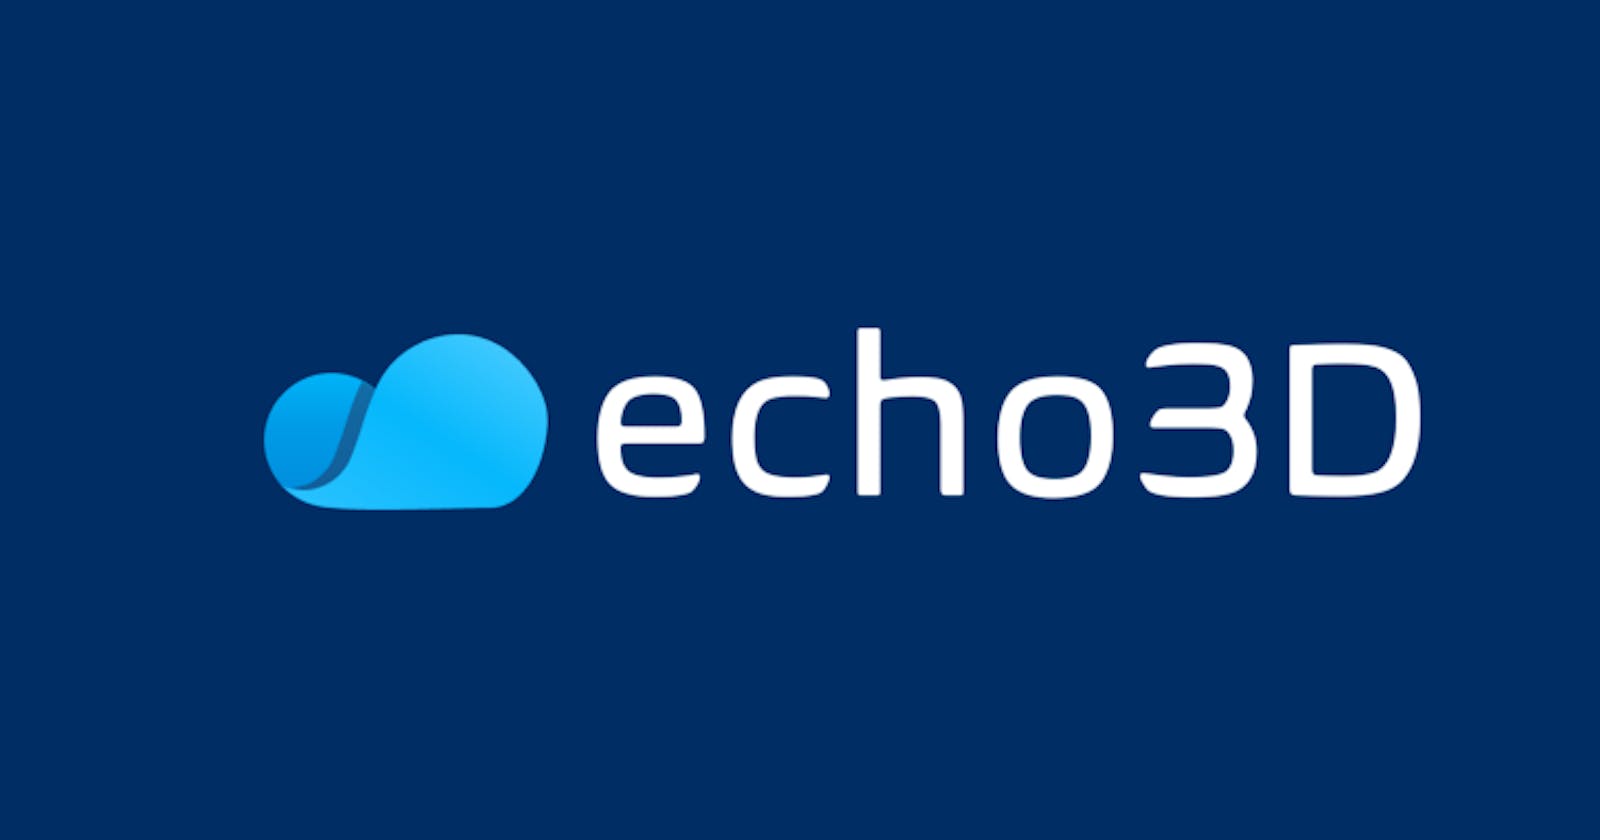 echo3D raises $4M for its 3D-first cloud platform